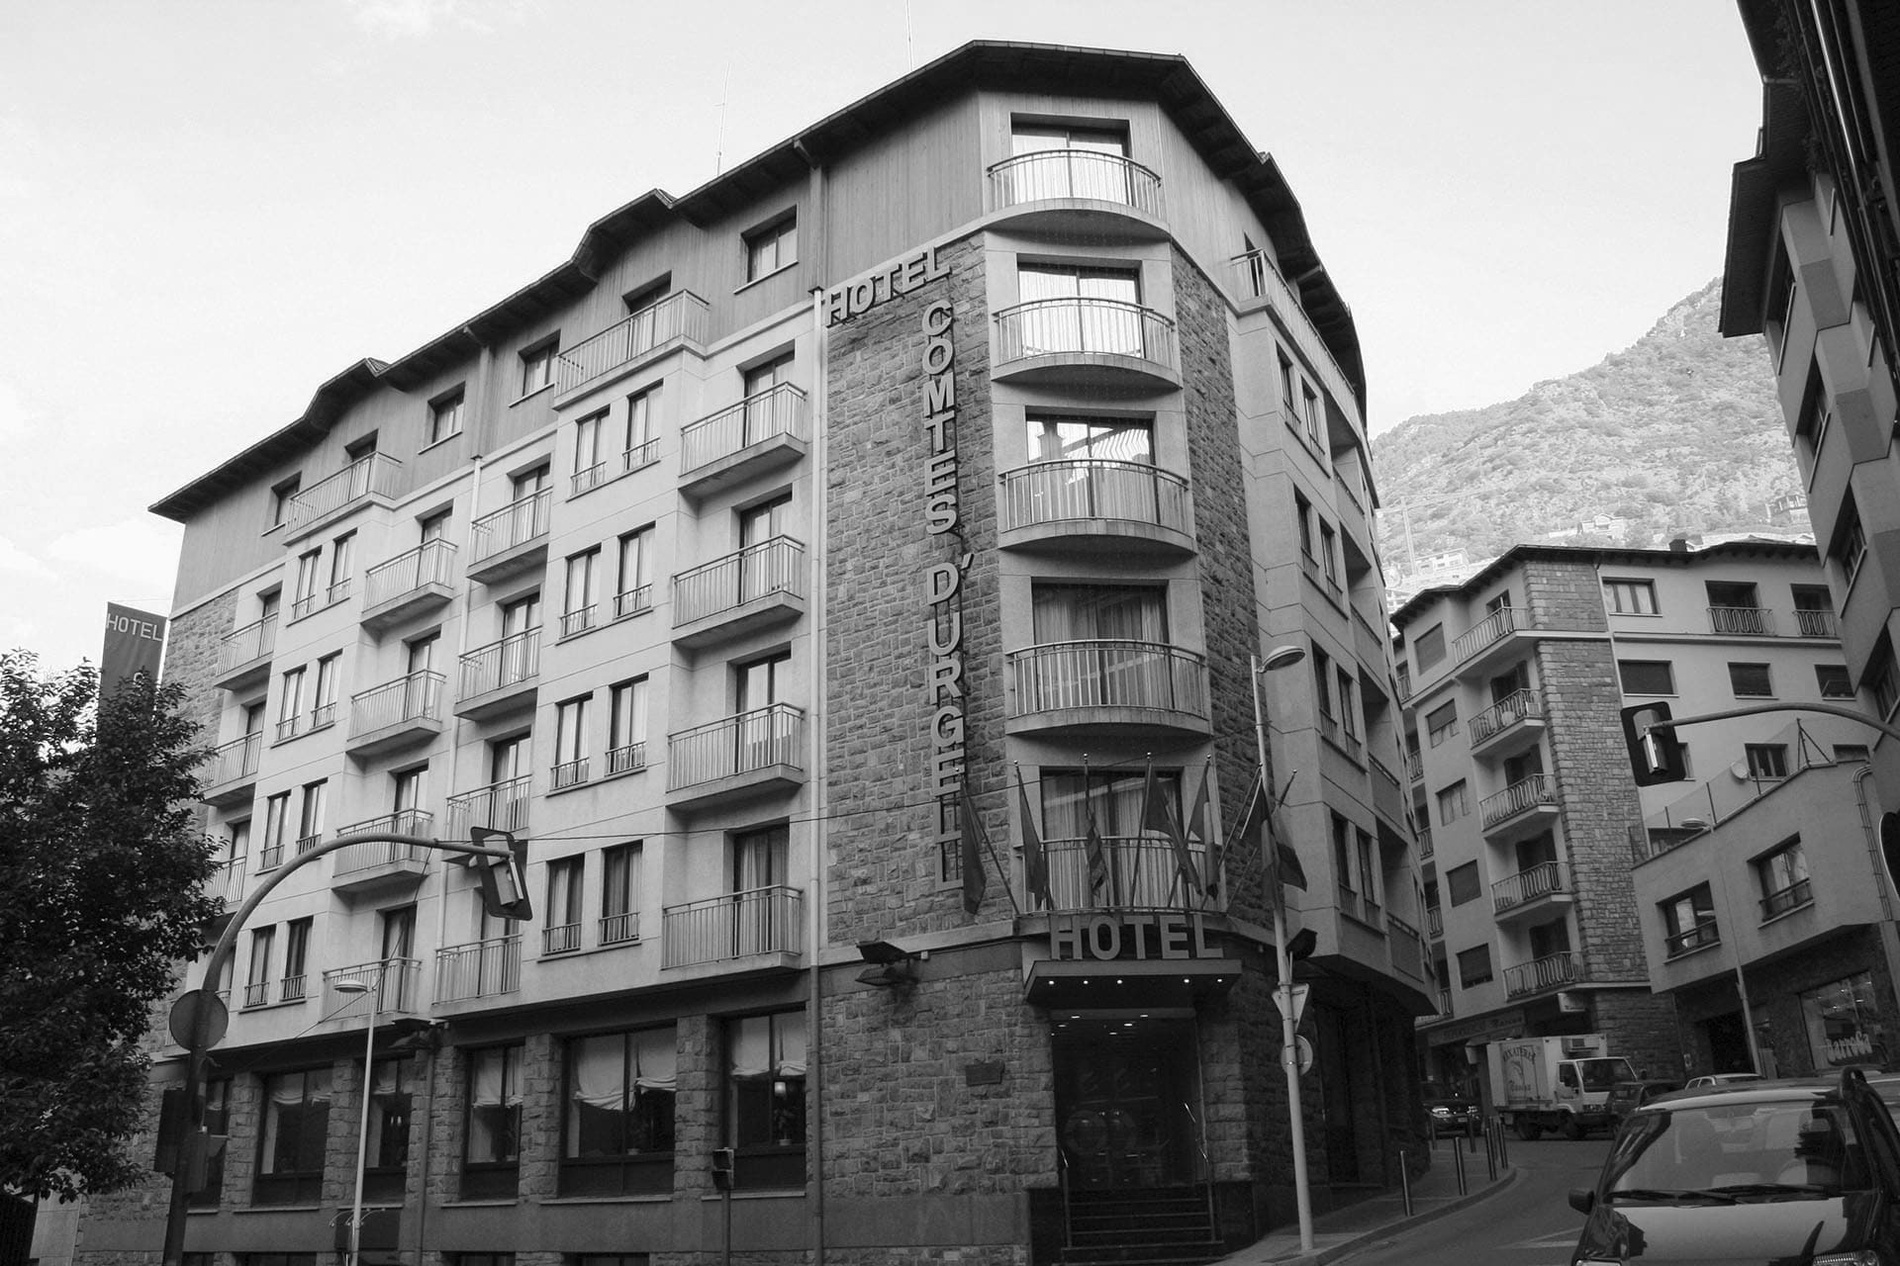 Hotansa | Hoteles en Andorra=s1900